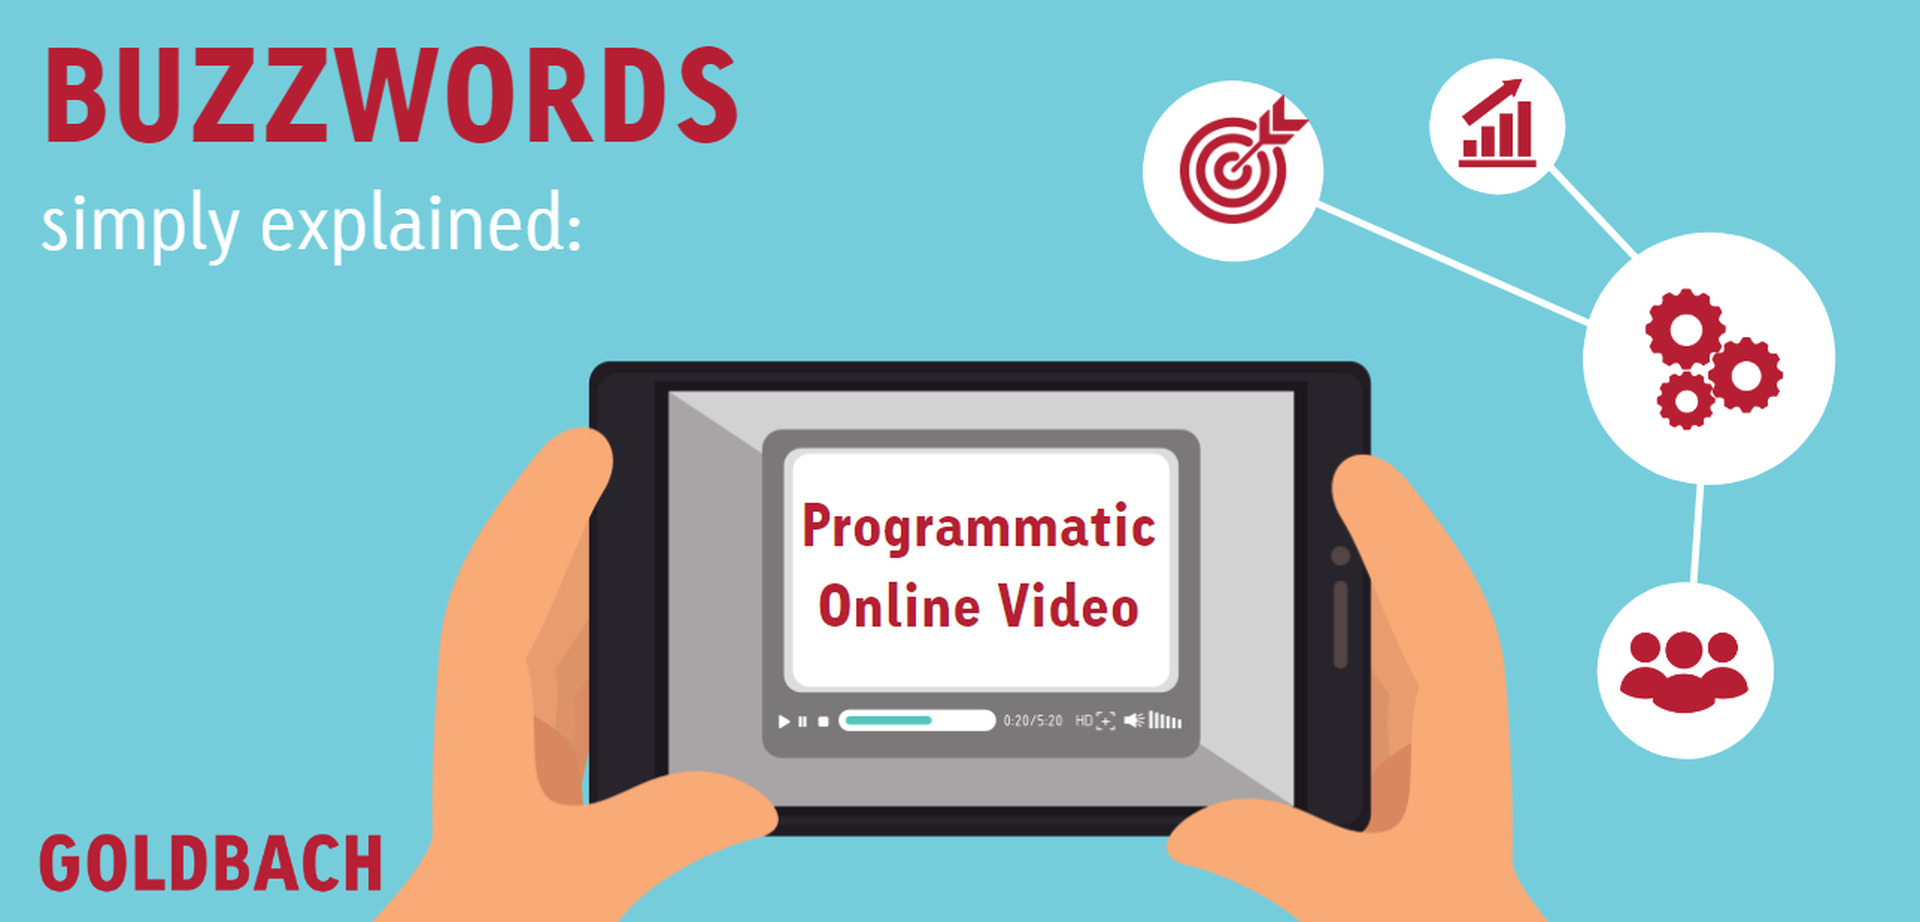 Buzzwords_en_Programmatic Online Video.PNG